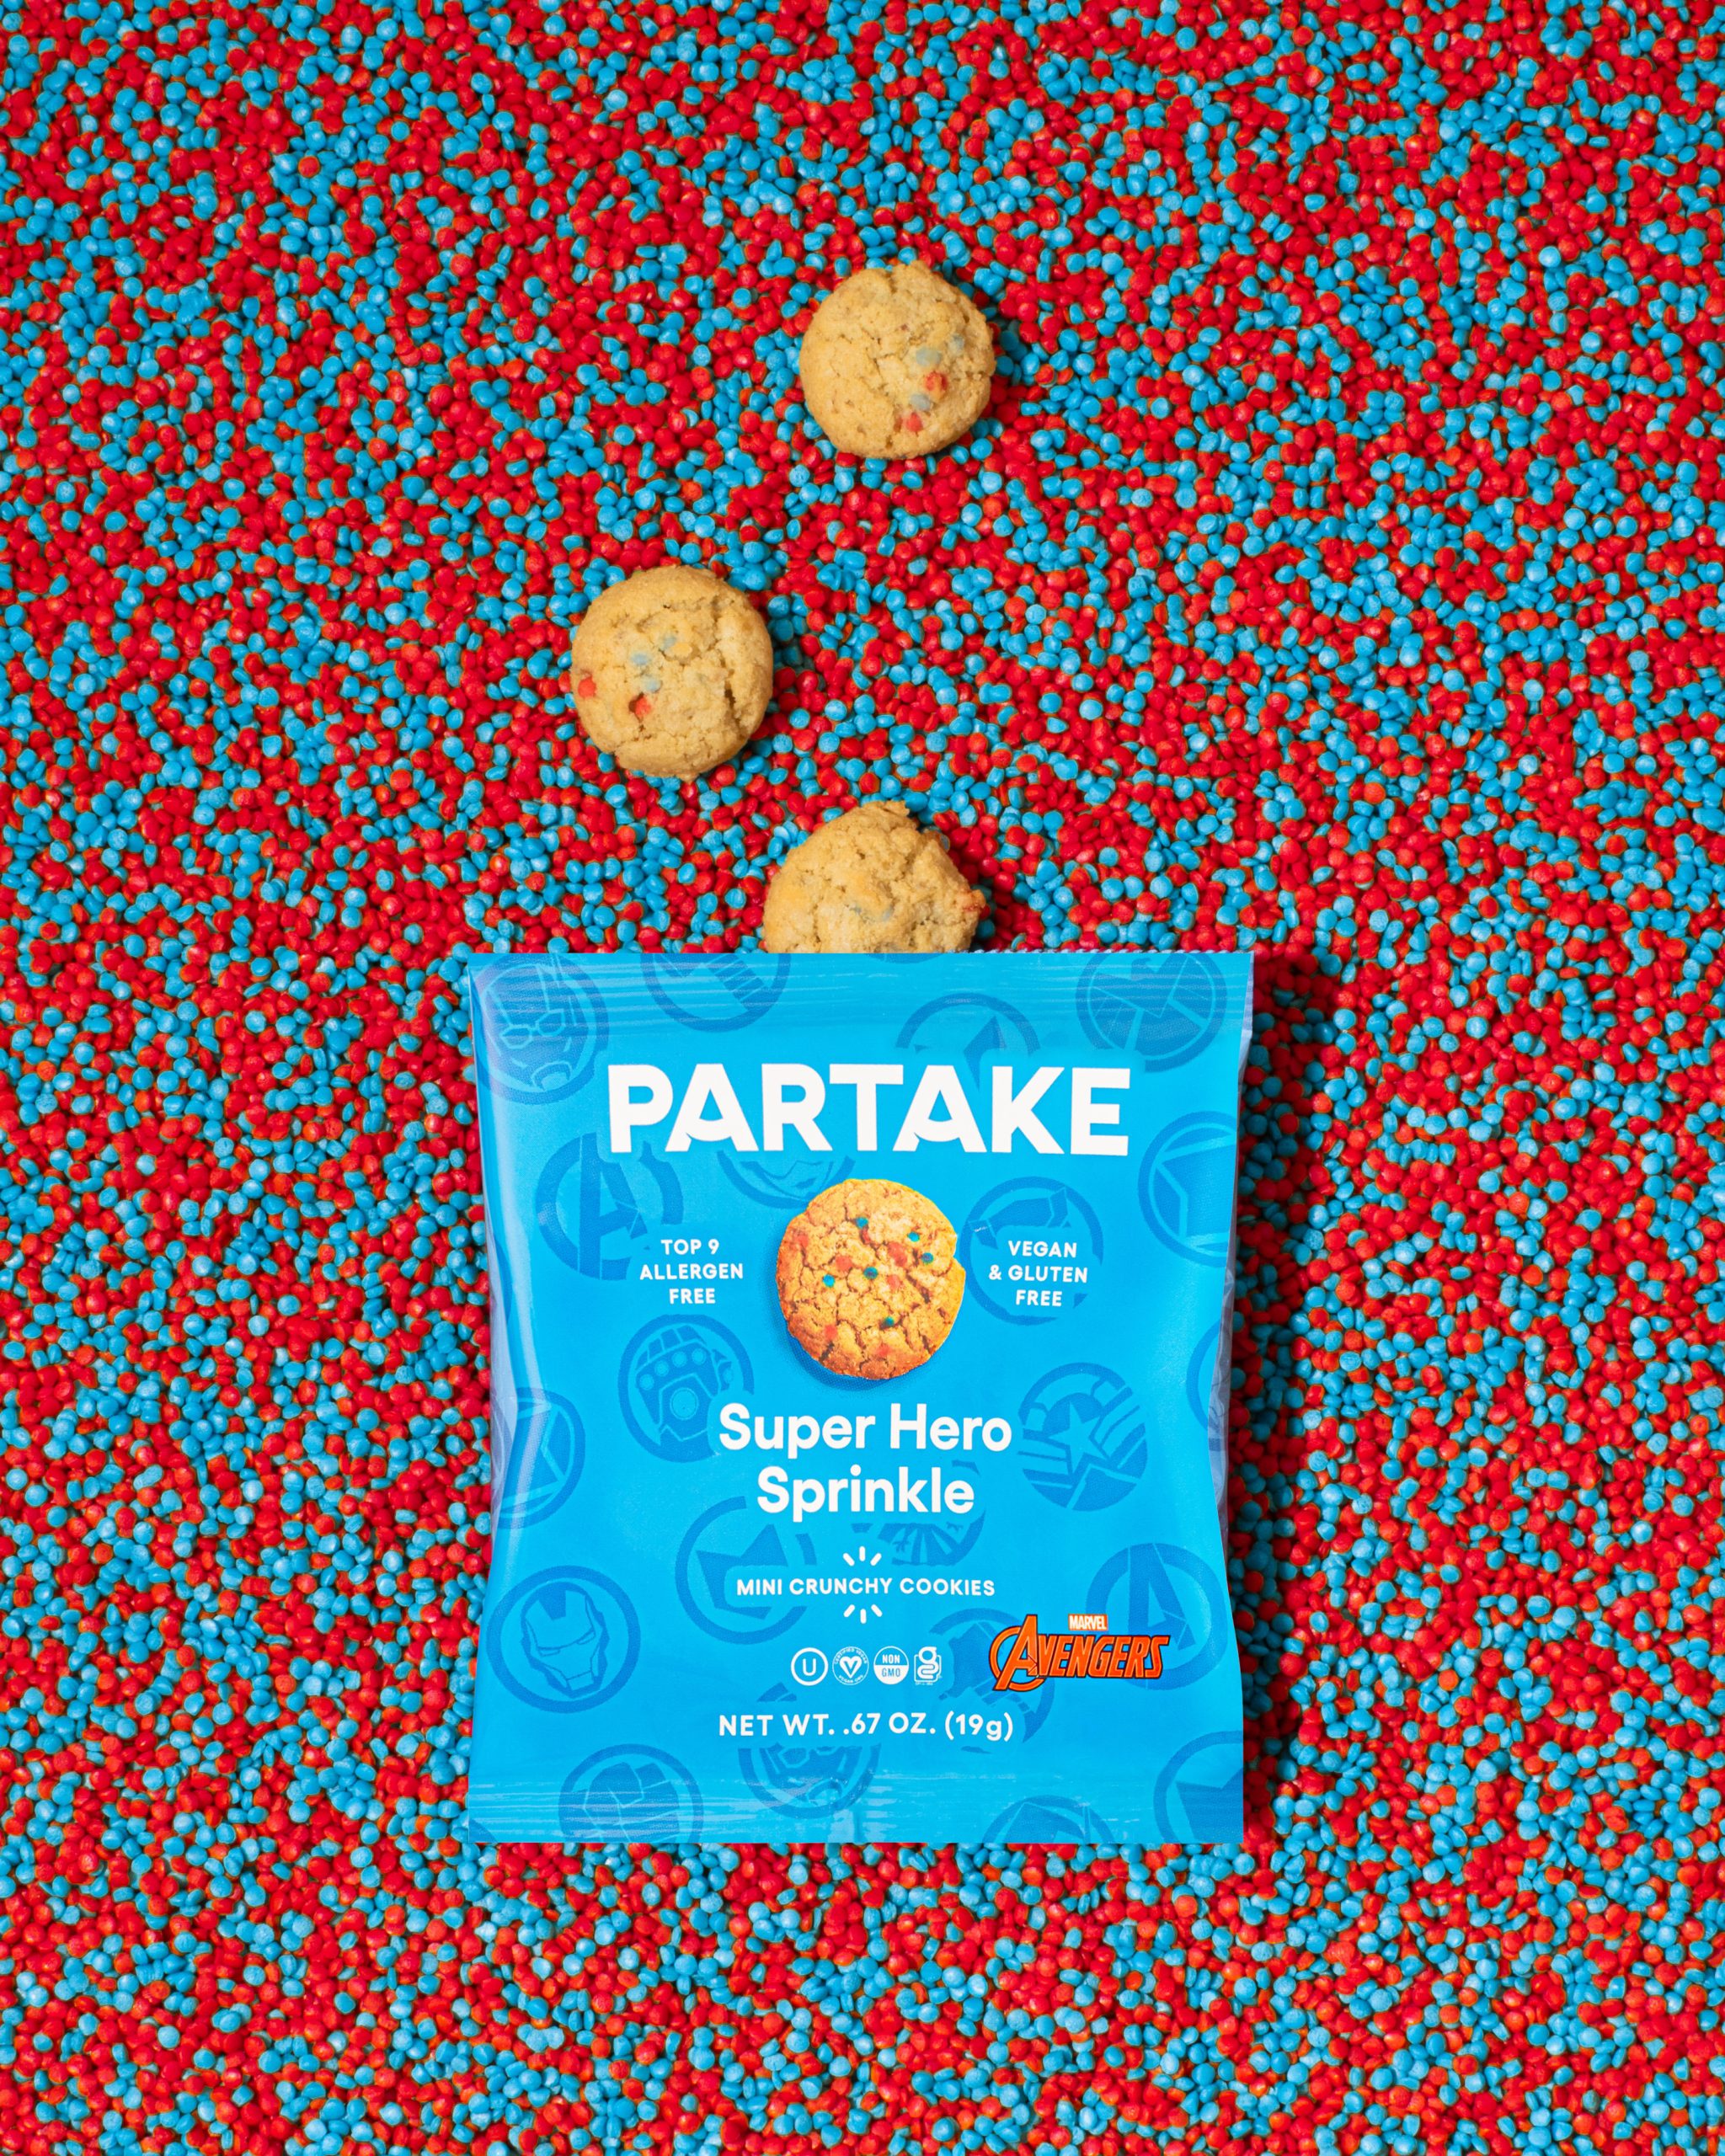 Super Hero Sprinkle Mini Crunchy Cookies @ Partake Foods